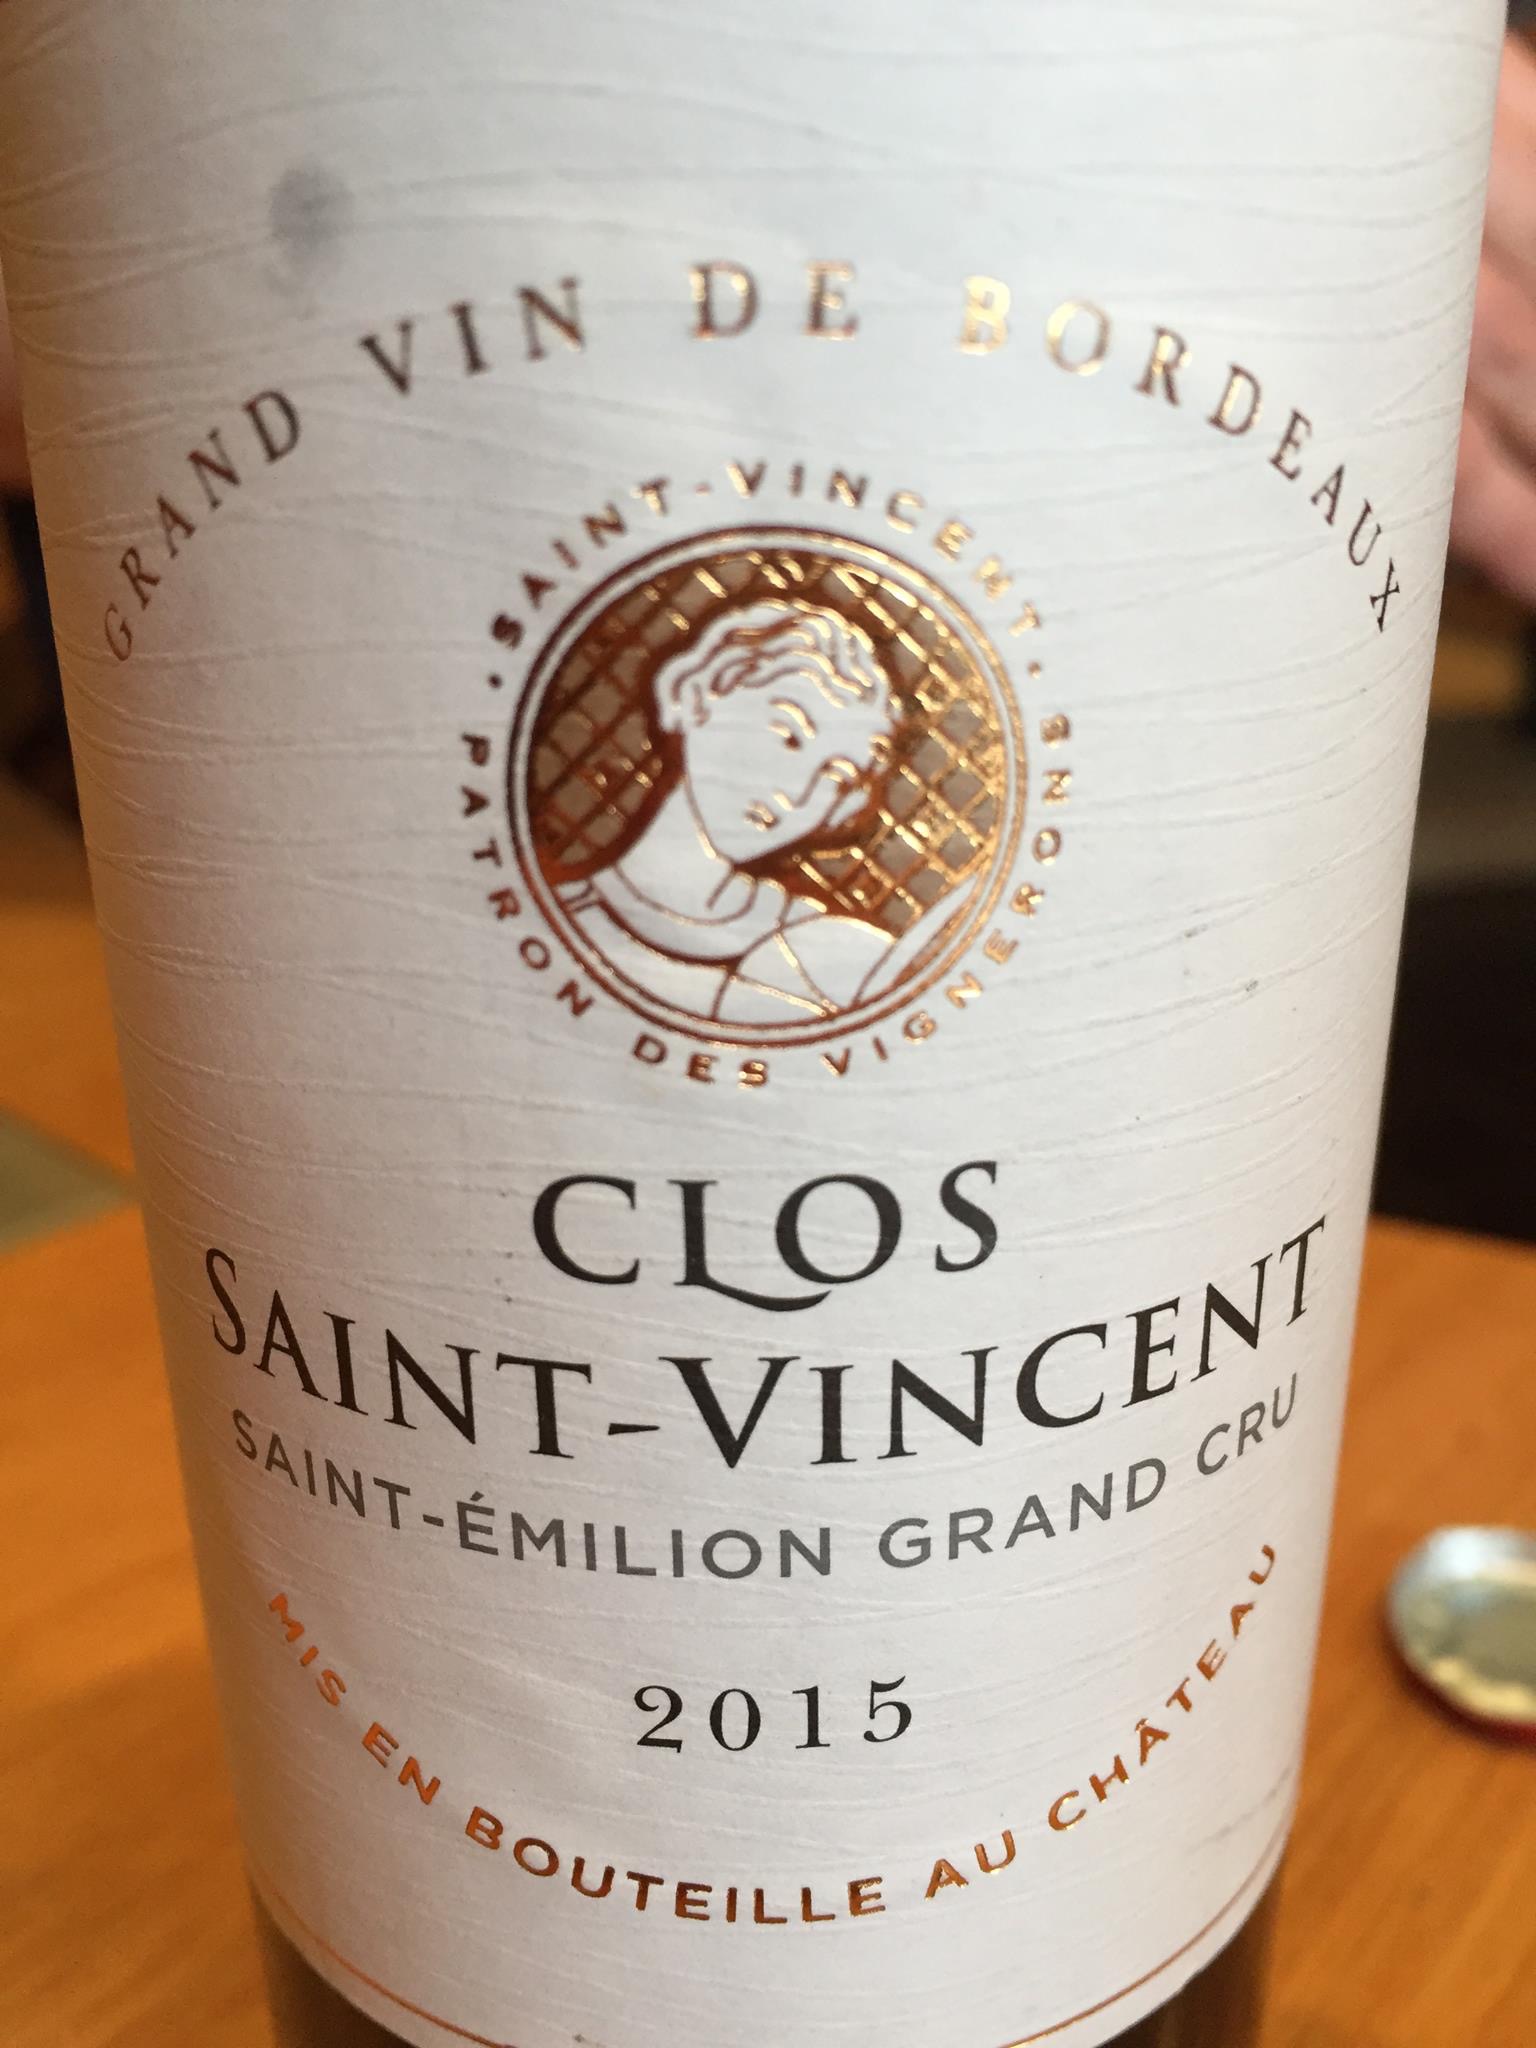 Clos Saint-Vincent 2015 – Saint-Emilion Grand Cru